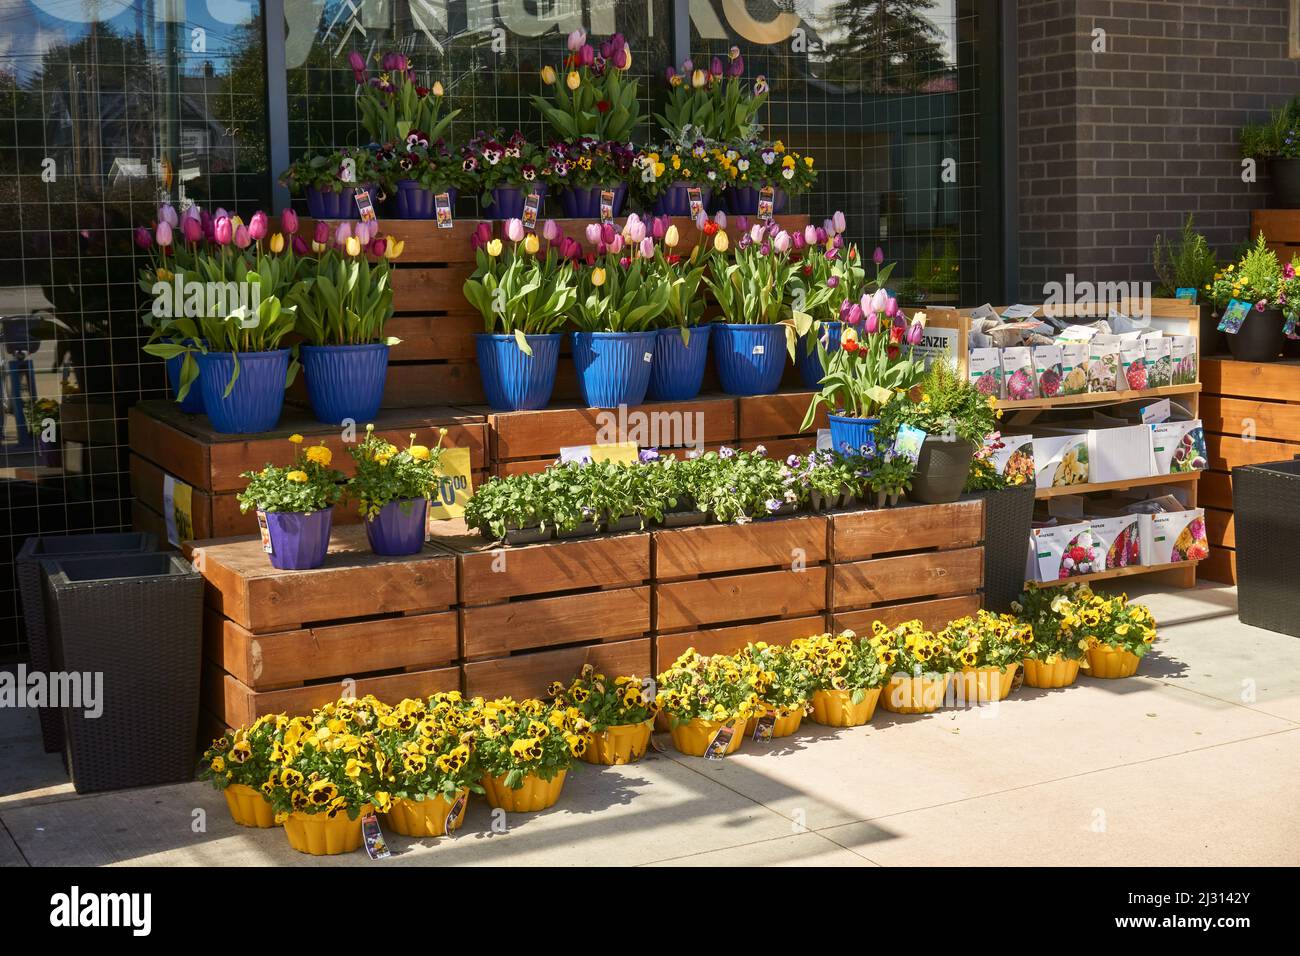 Exhibición de tulipanes en macetas, pansies y otras flores de primavera y paquetes de semillas para la venta fuera de una tienda en Vancouver, BC, Canadá Foto de stock